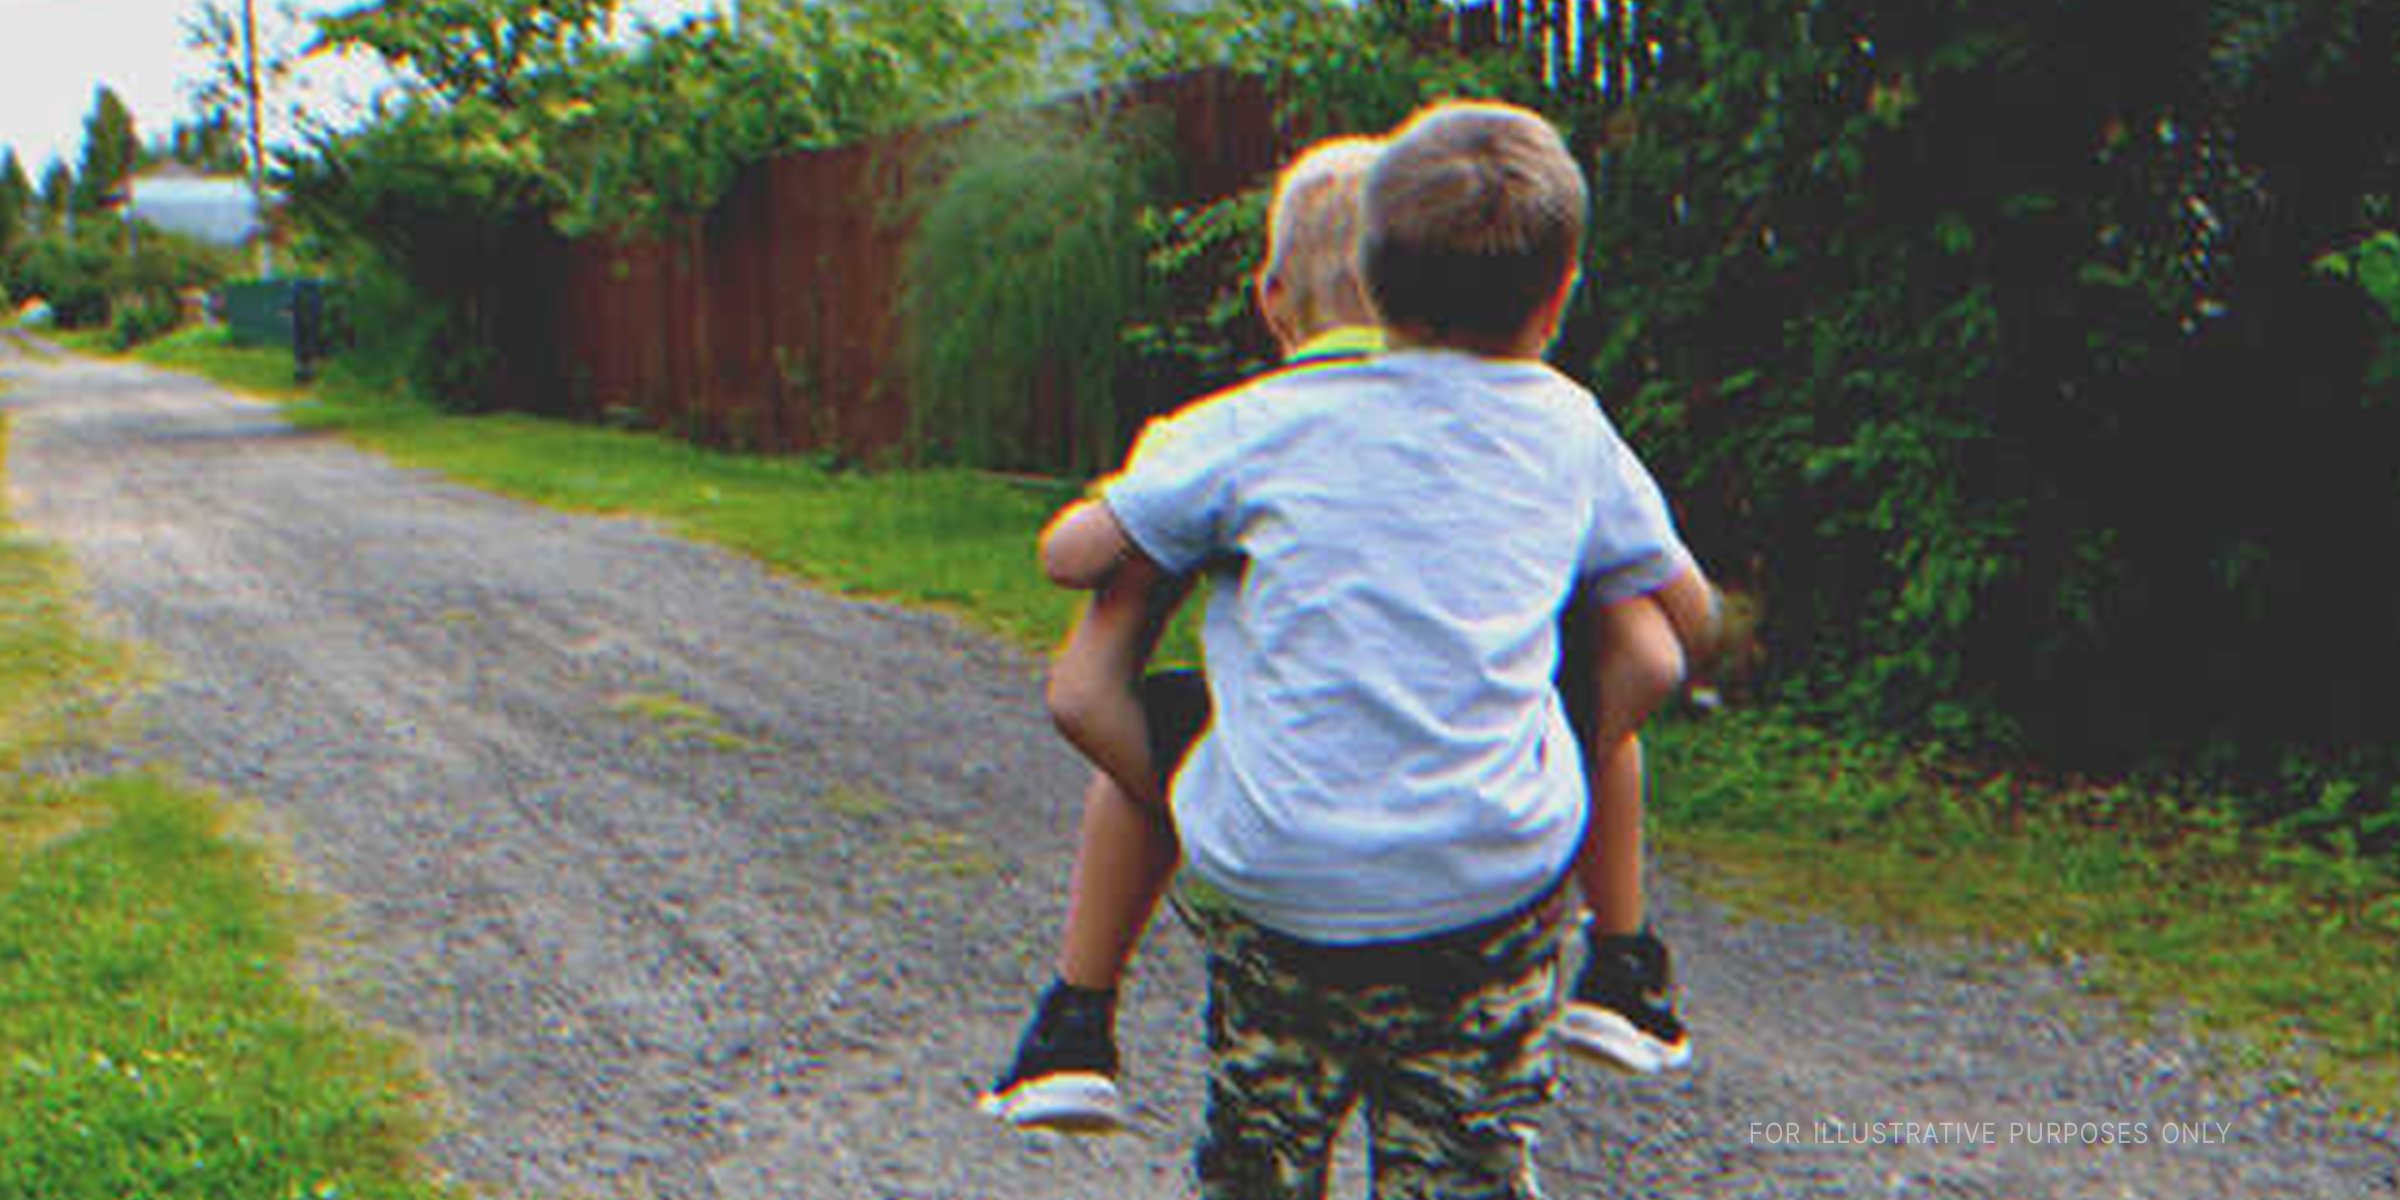 Ein Junge nimmt seinen Freund huckepack | Quelle: Shutterstock